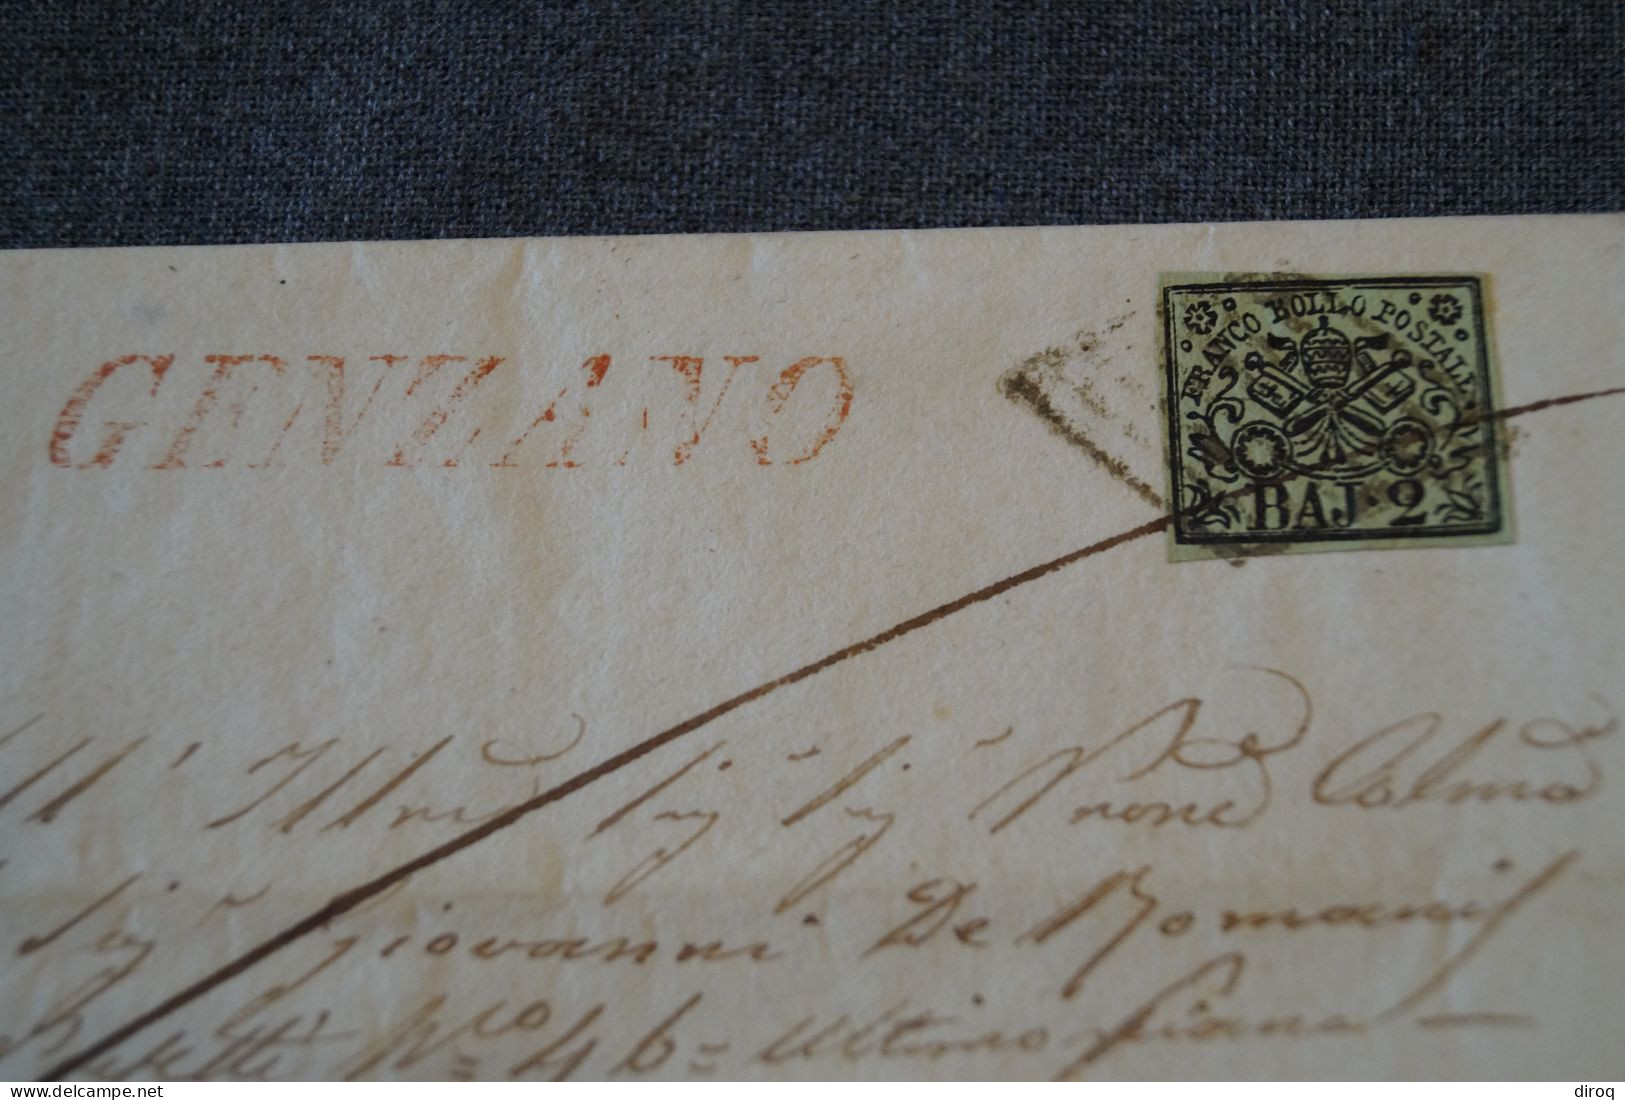 Ancien Envoi Franco Bollo Postale BAJ-2, Italia 1857,courrier à Identifier,pour Collection - Papal States